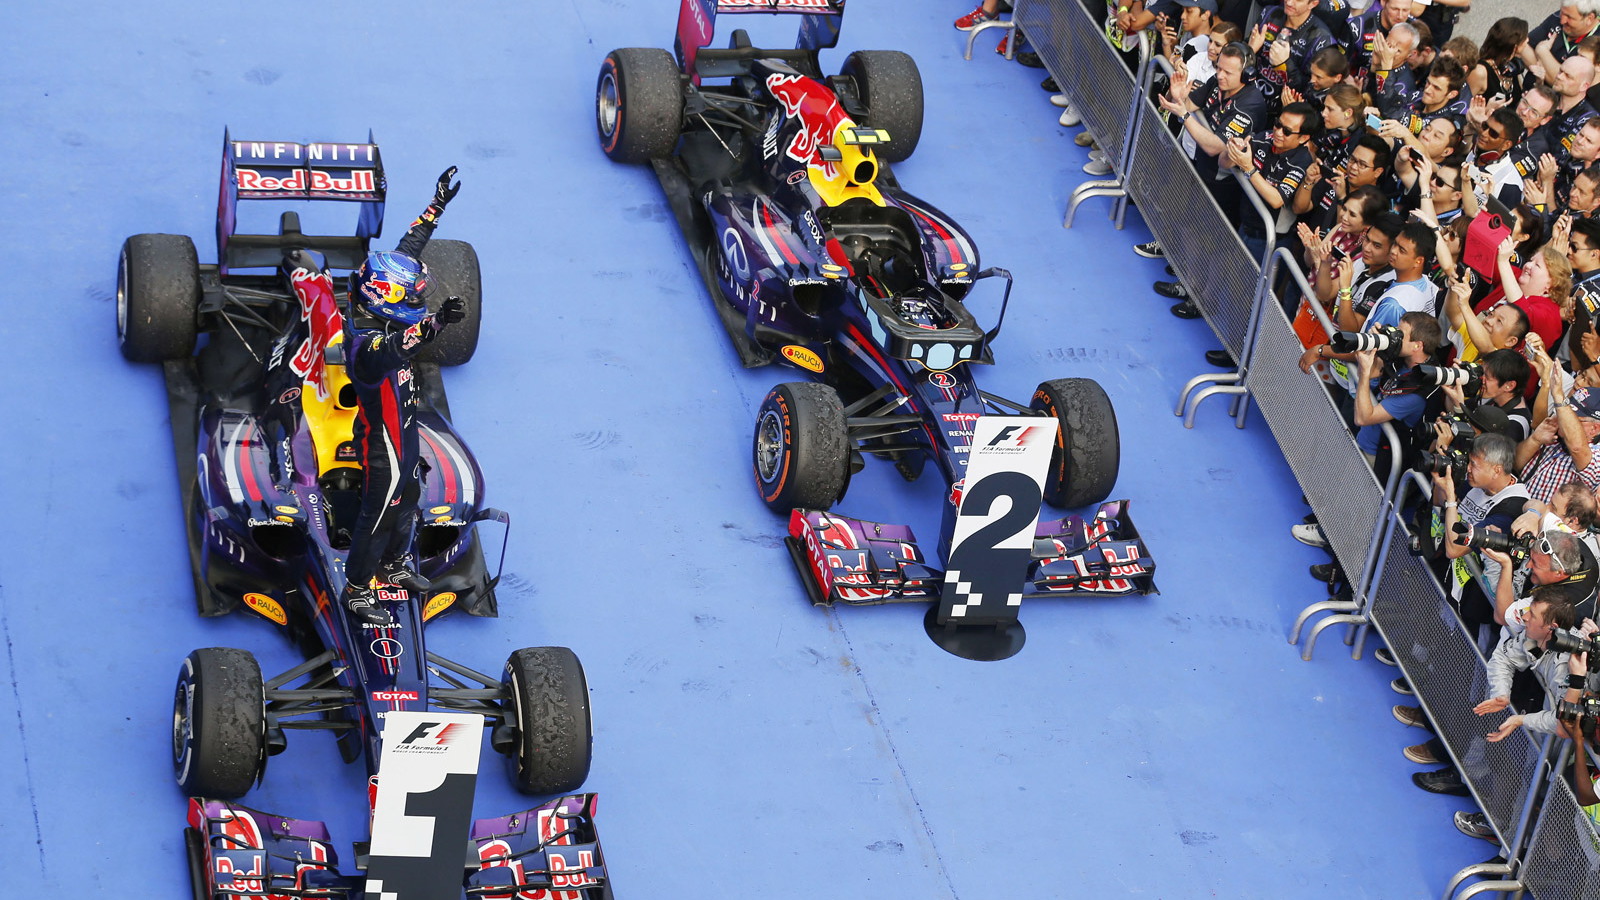 Red Bull Racing at the 2013 Formula 1 Malaysian Grand Prix